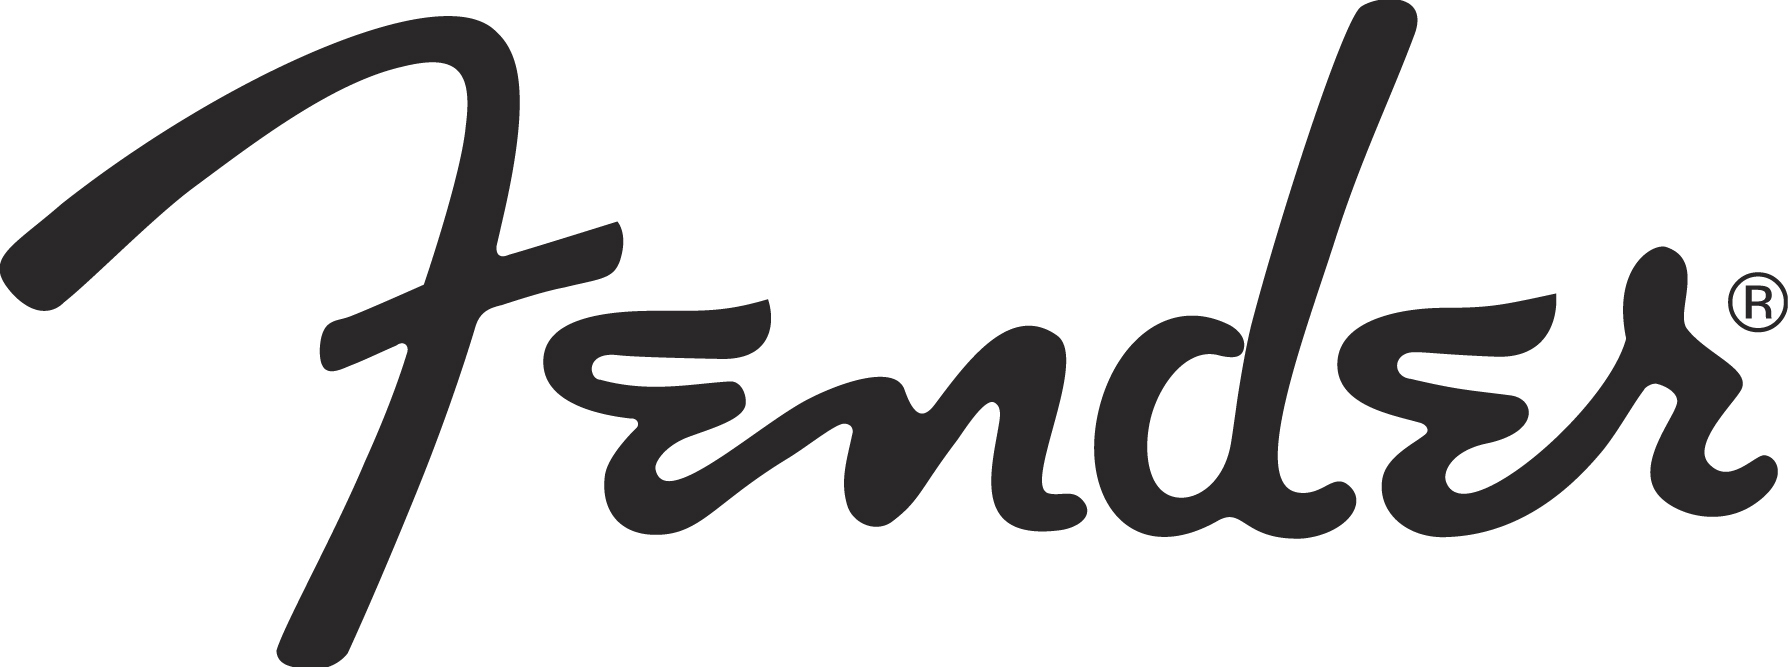 Fender brand logo